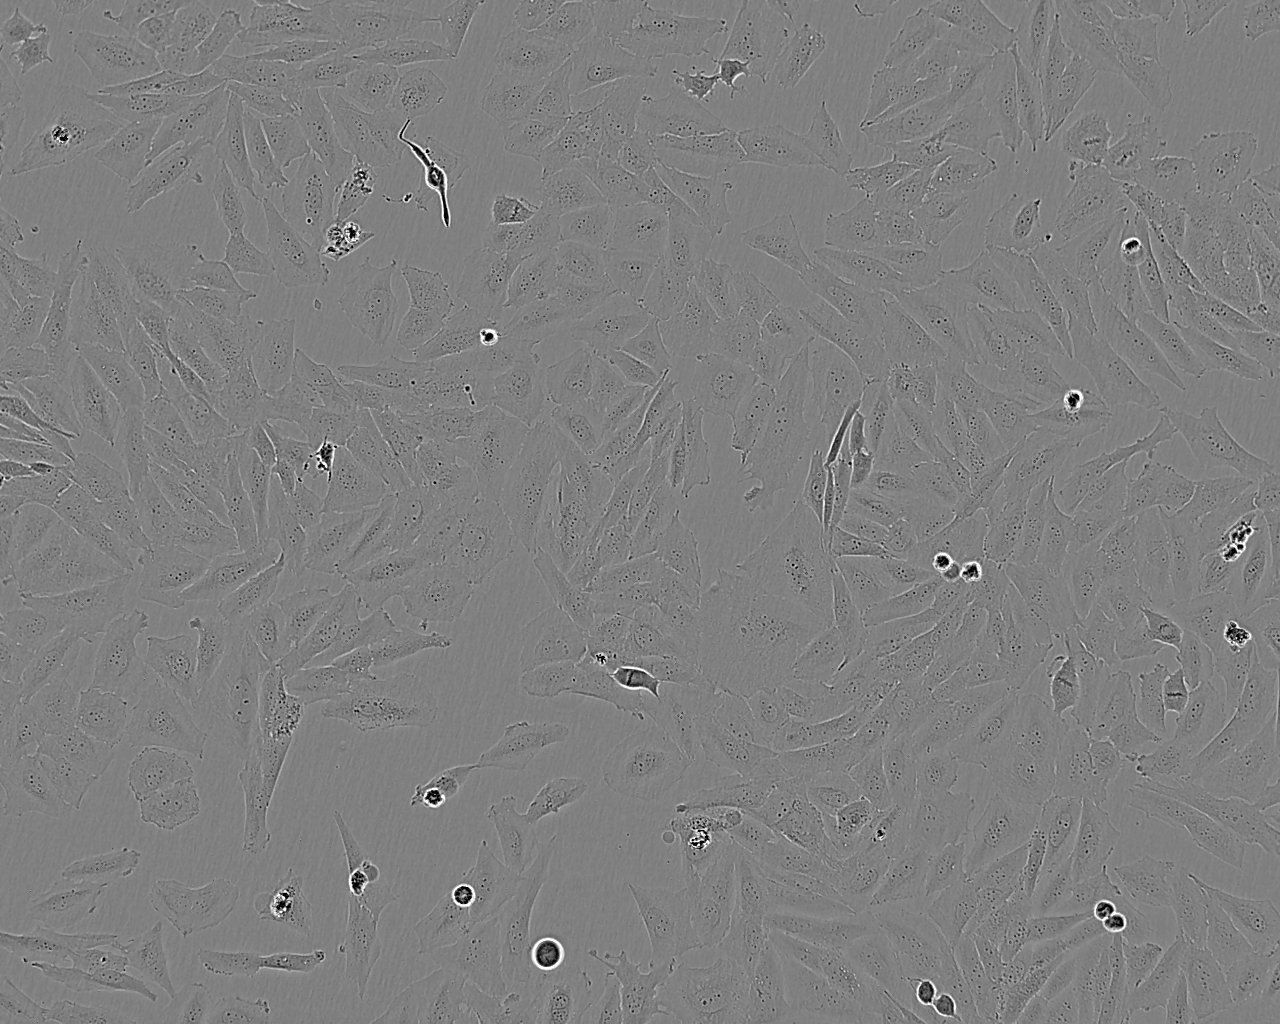 TT epithelioid cells人甲状腺髓样癌细胞系,TT epithelioid cells